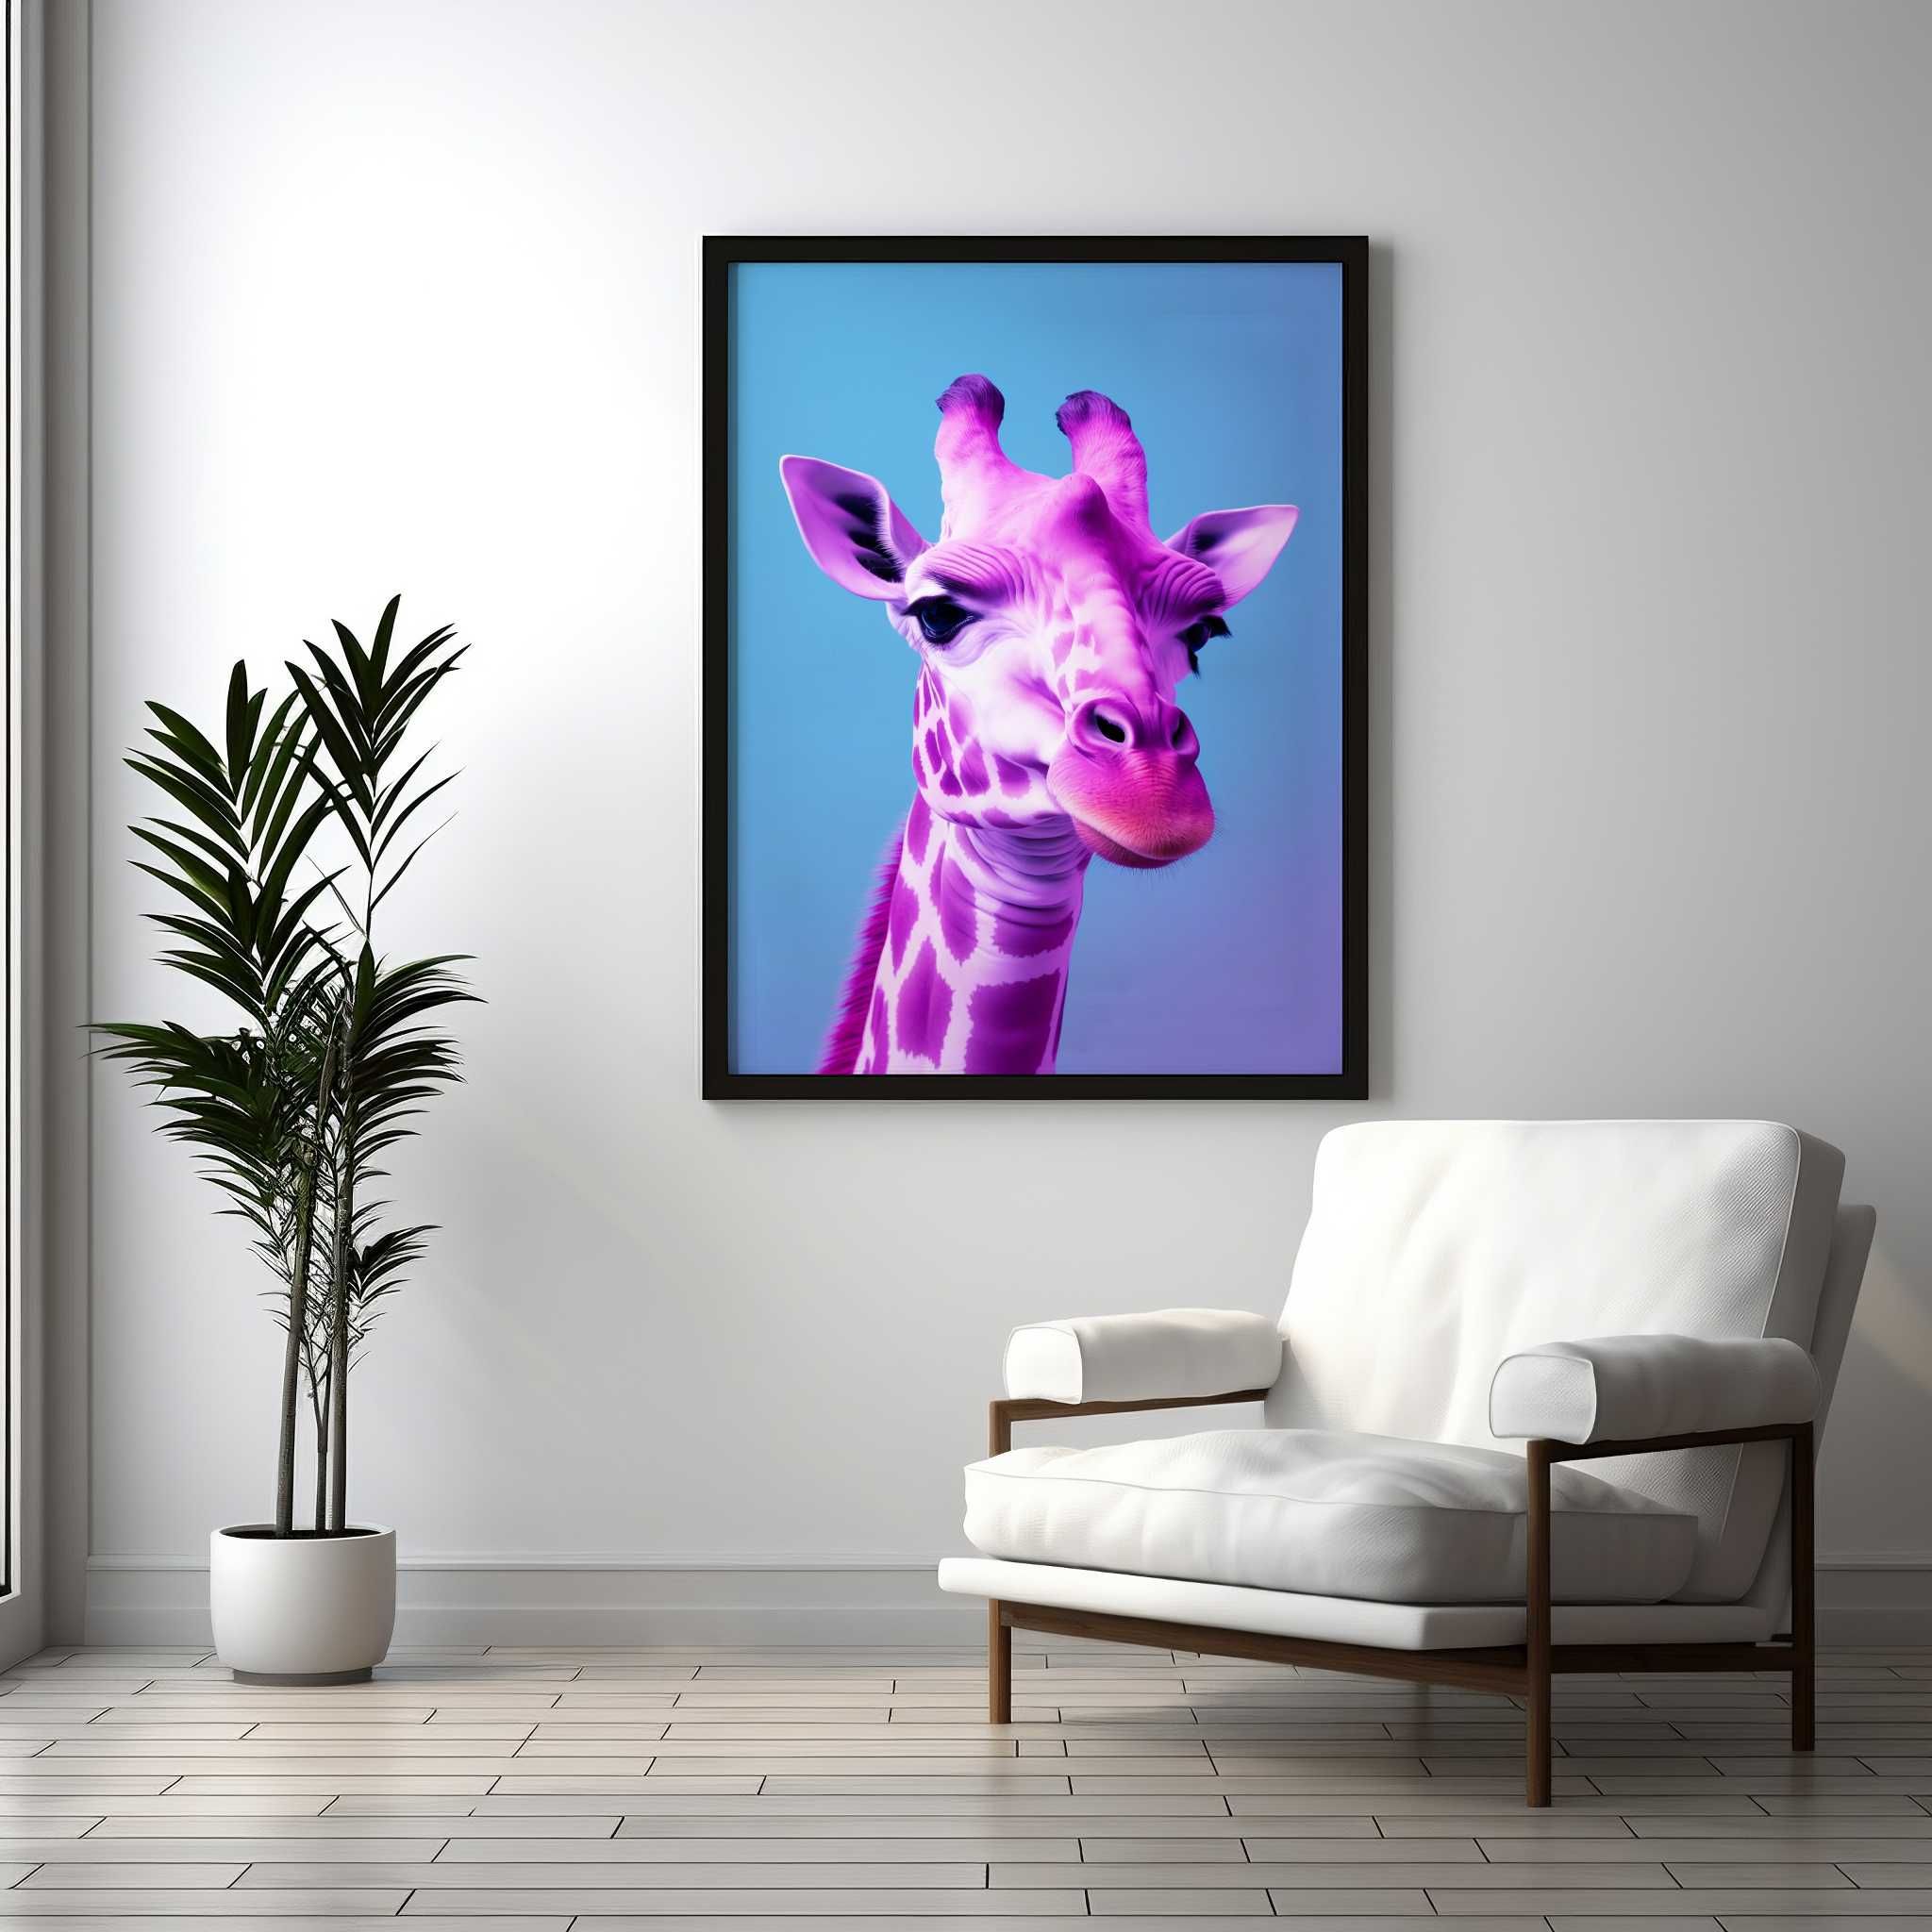 Plakat na Ścianę Obraz Neonowa Żyrafa Art 40x60 cm Premium